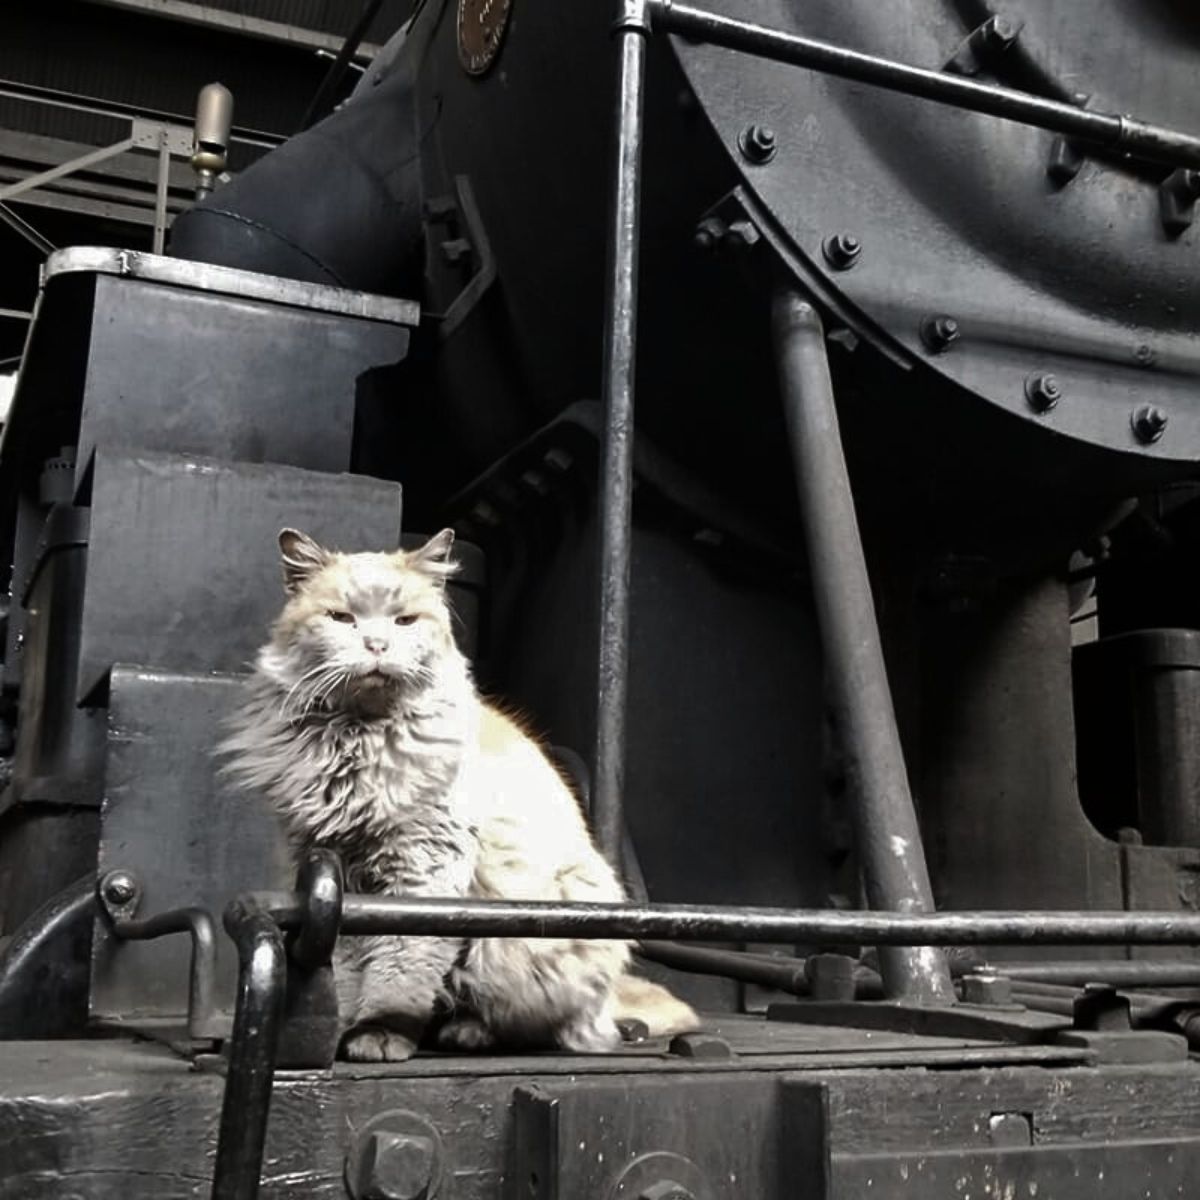 cat on a machine